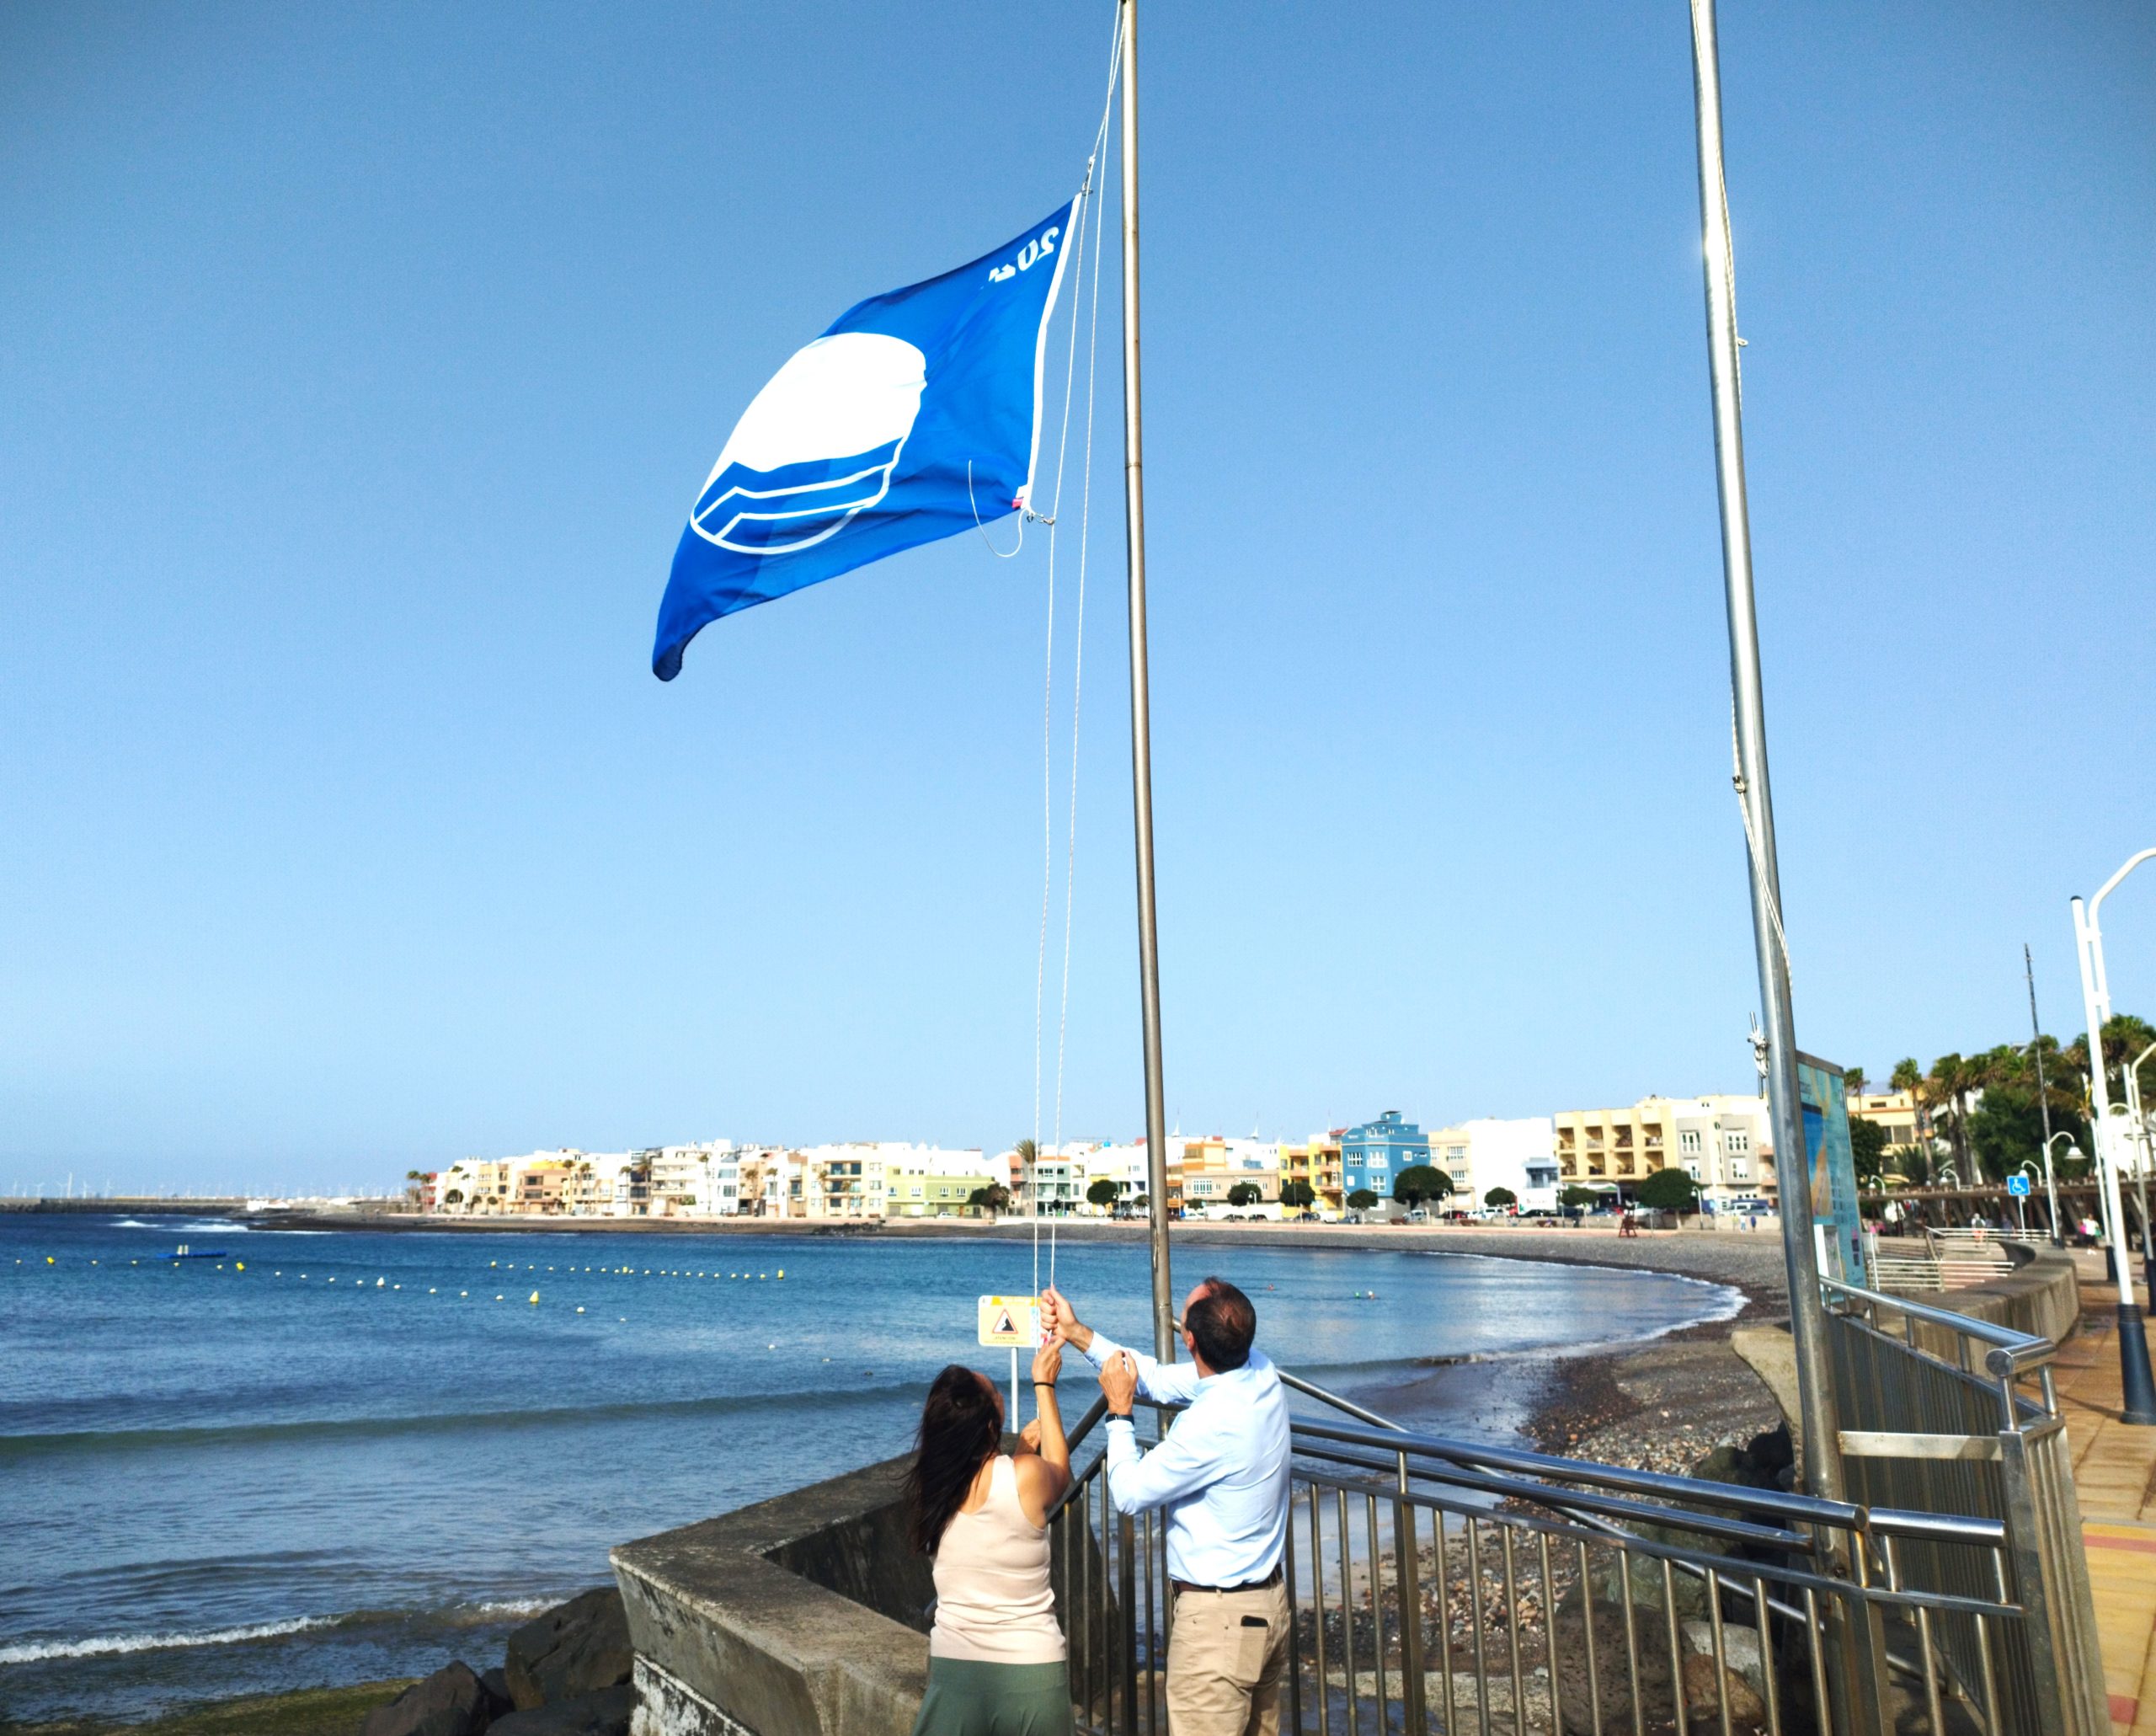 Featured image for “La bandera azul ondea en la playa de Arinaga por octavo año consecutivo.”